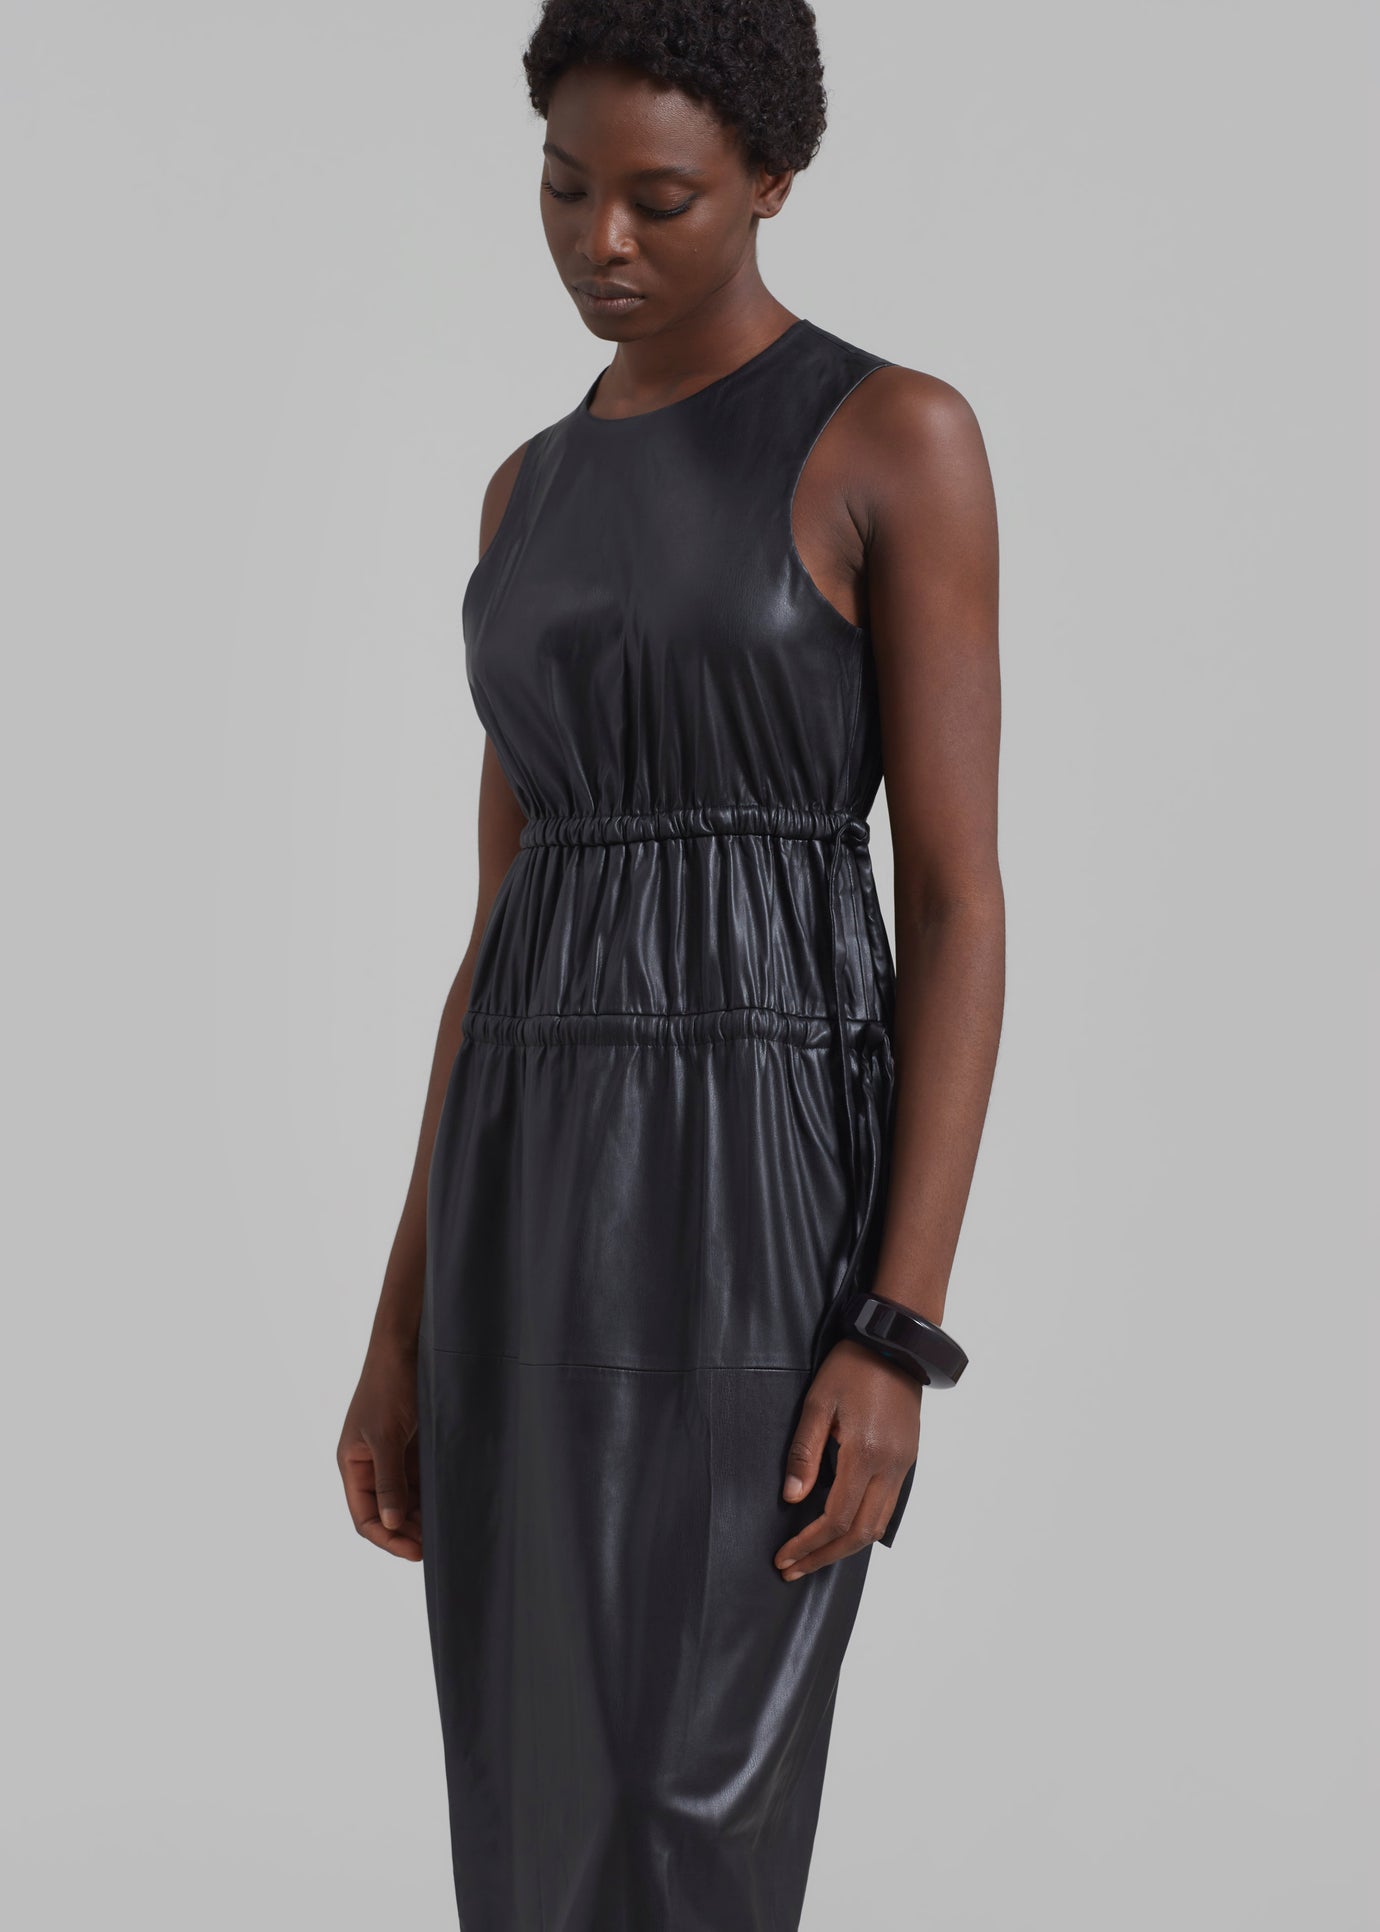 Proenza Schouler White Label Faux Leather Drawstring Dress - Black - 1